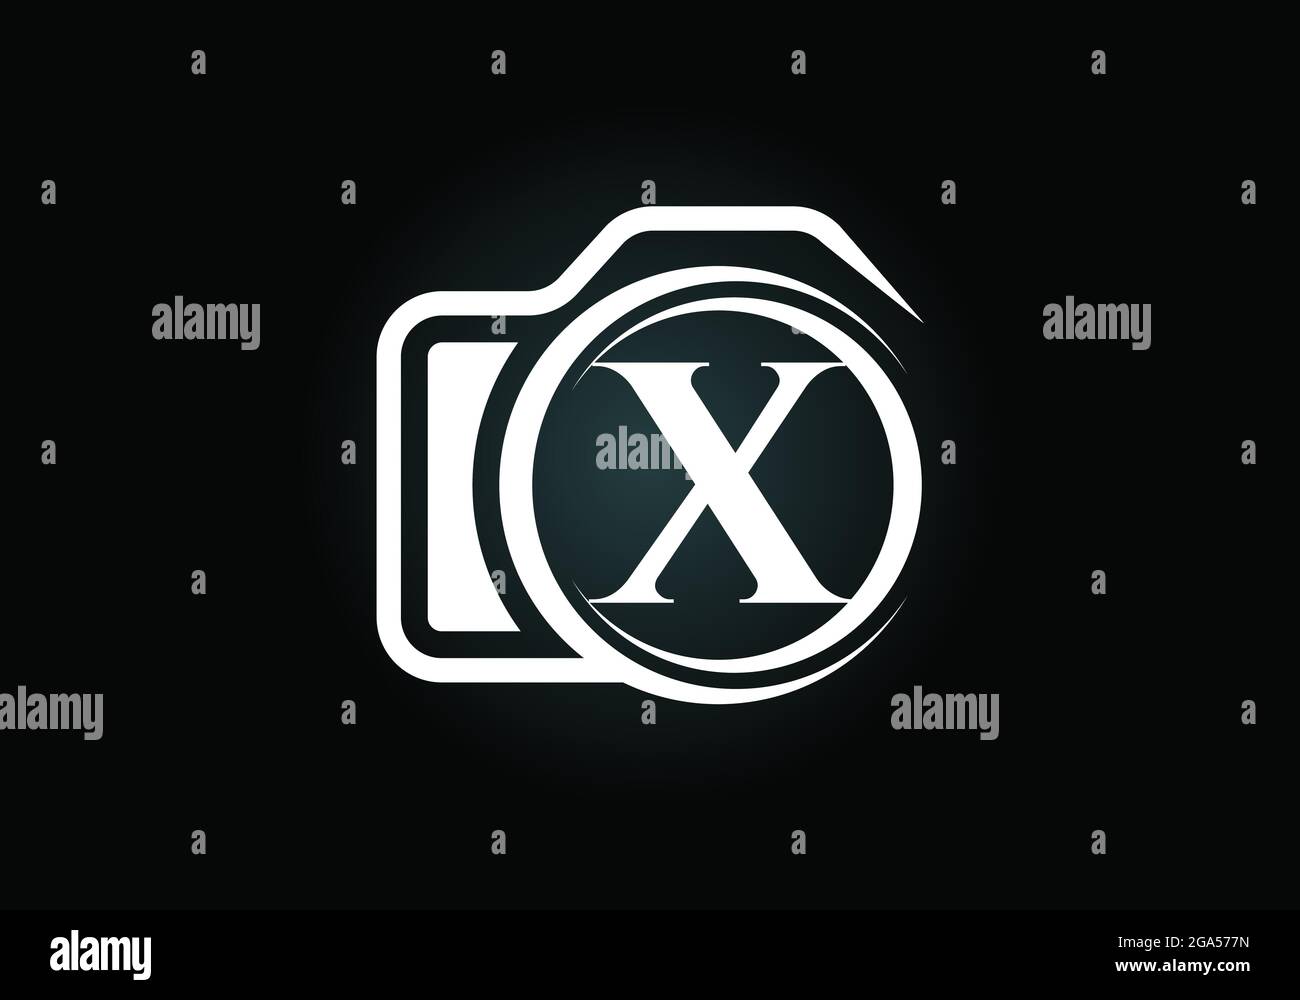 Lettera iniziale del monogramma X con l'icona di una telecamera. Immagine vettoriale del logo fotografico. Design moderno del logo per il settore della fotografia e l'azienda Illustrazione Vettoriale